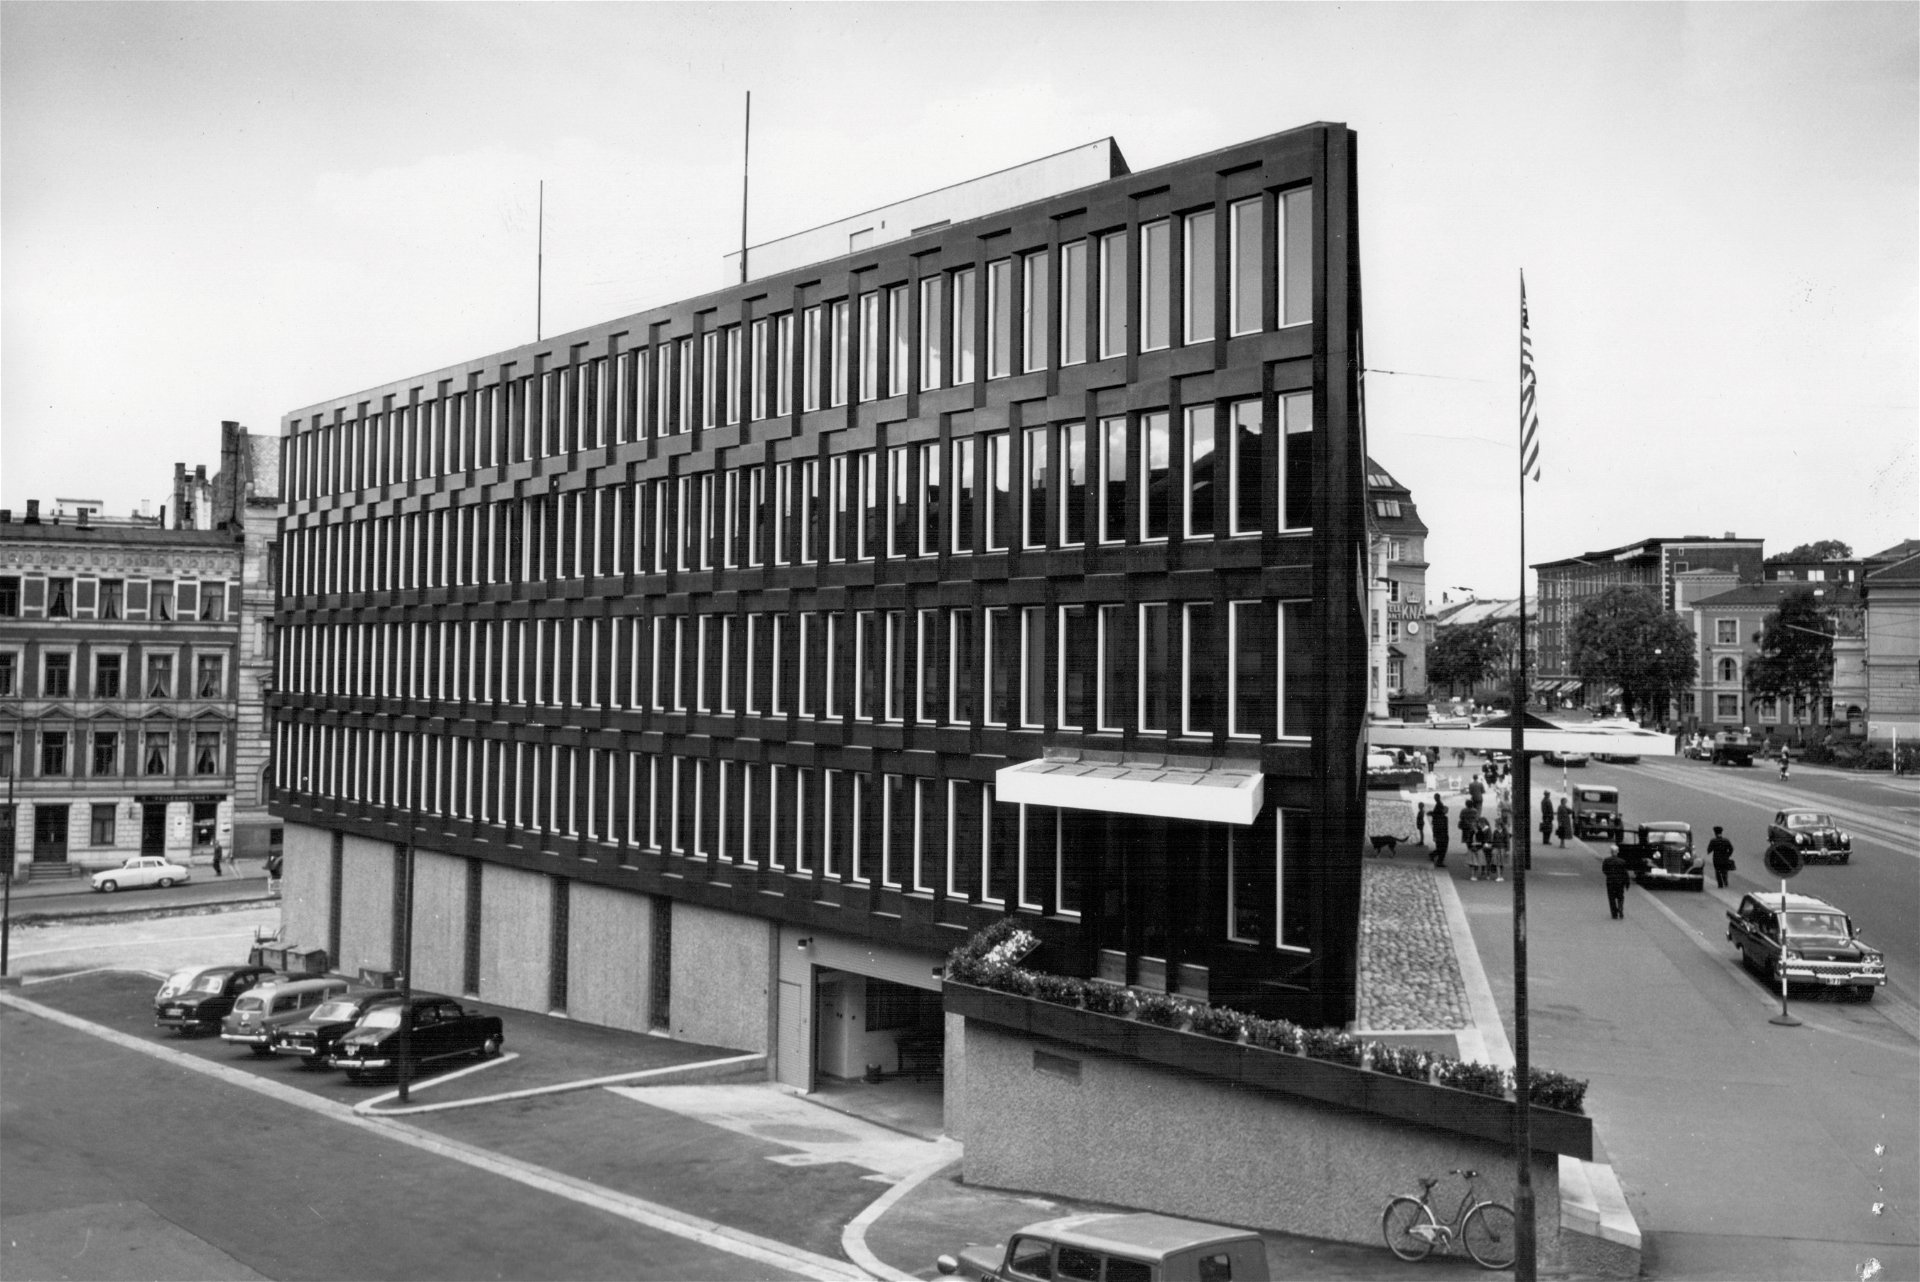 Fredensborg HQ: Eero Saarinen, 1957–59, Lund Hagem Architects, 2022. »Die frühere Botschaft der USA wird 2022 als Bürogebäude wiedereröffnet – dann wird dieses fantastische Bauwerk erstmals für die Öffentlichkeit zugänglich sein.«